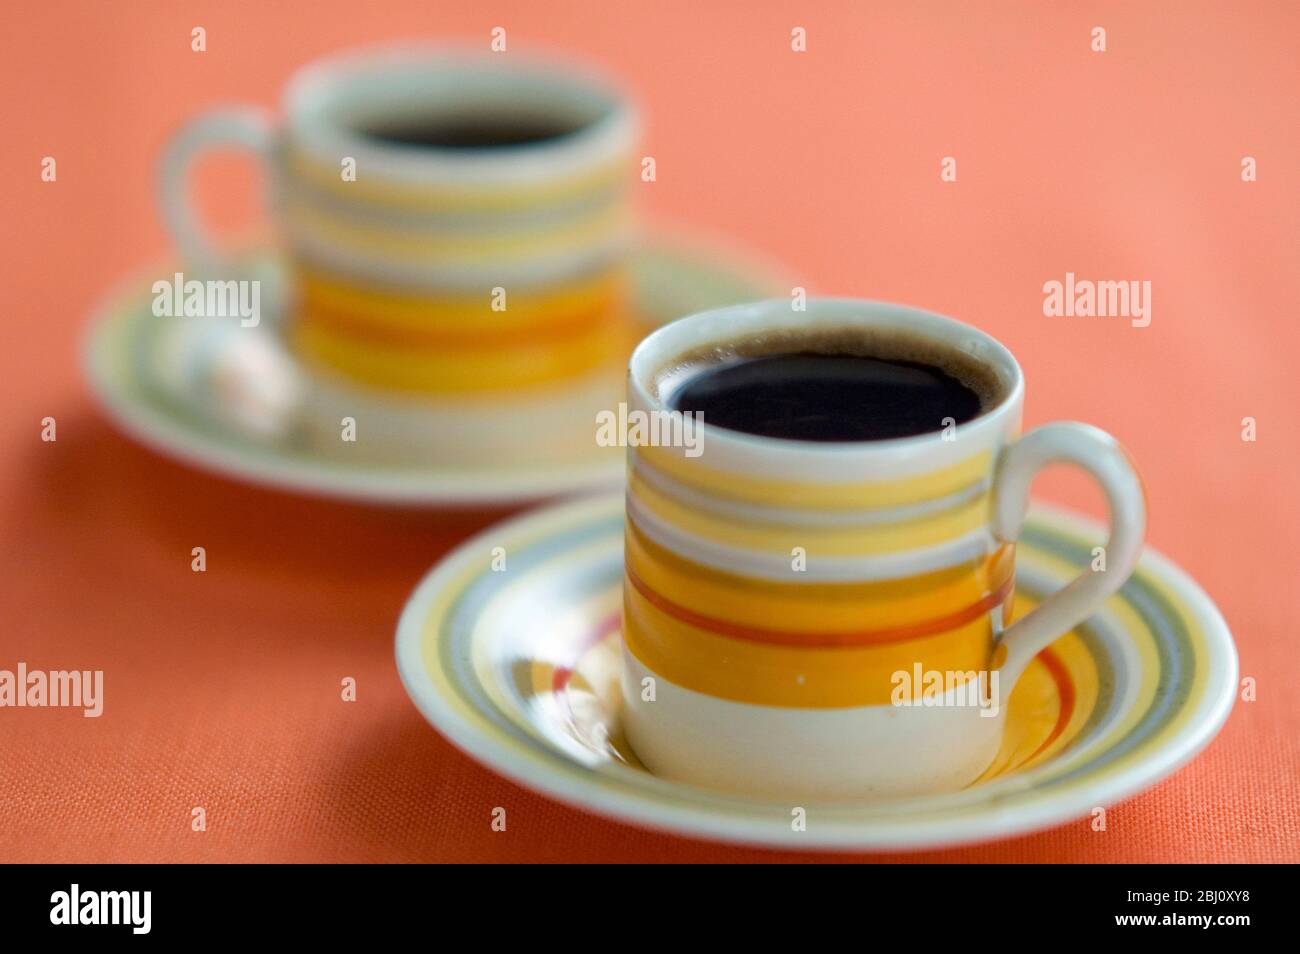 Zwei kleine Kaffeetassen mit schwarzem Kaffee nach dem Abendessen - Stockfoto